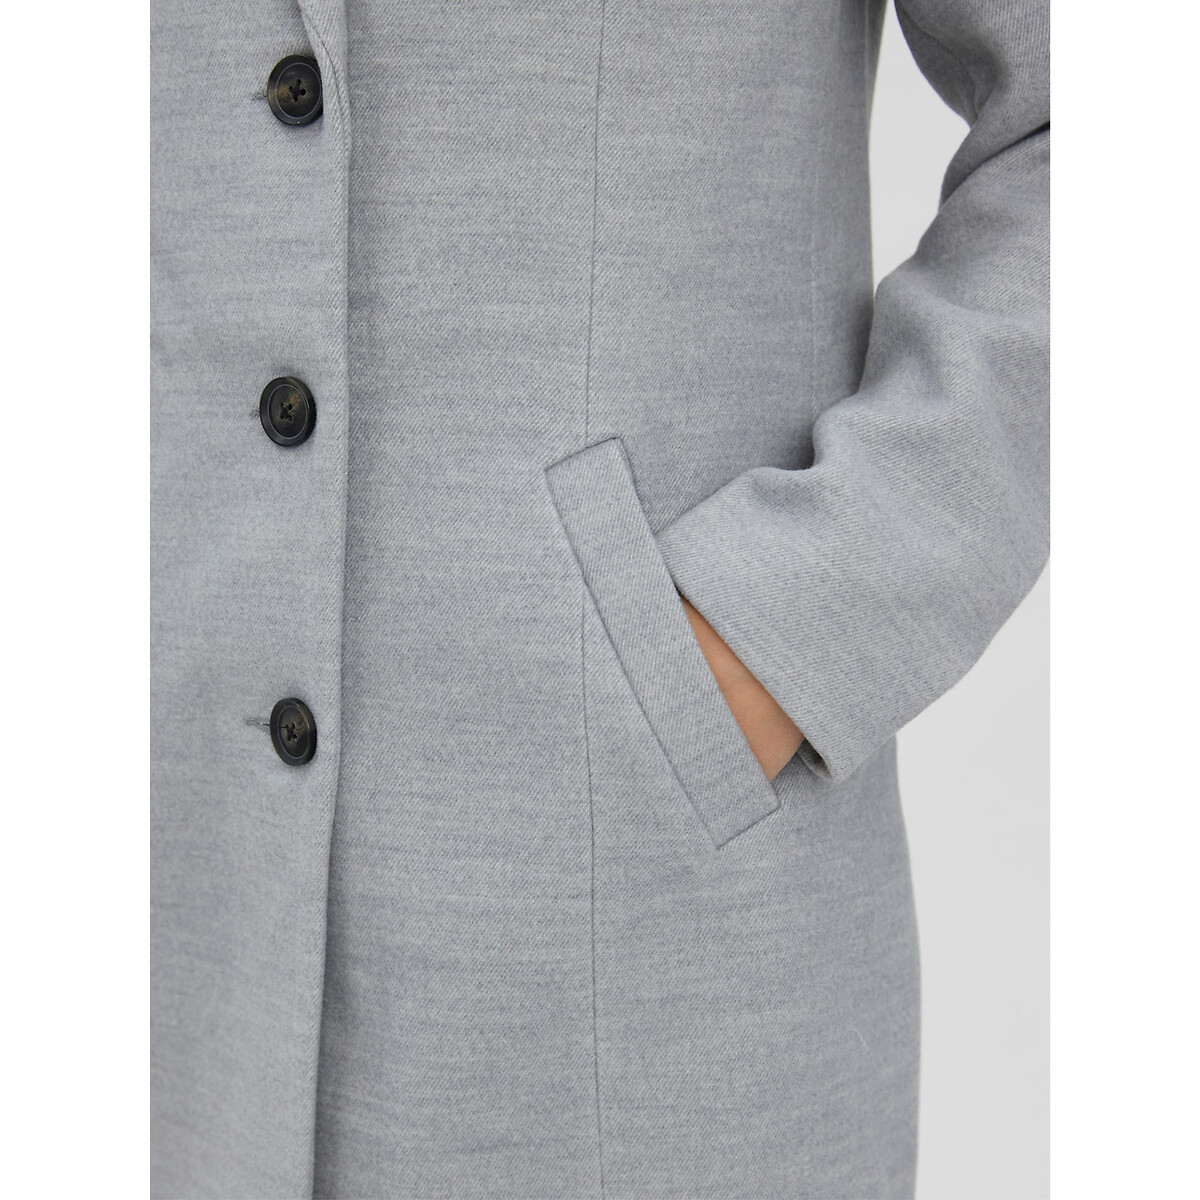 Пальто VERO MODA Прямого покроя костюмный воротник L серый, размер L - фото 4